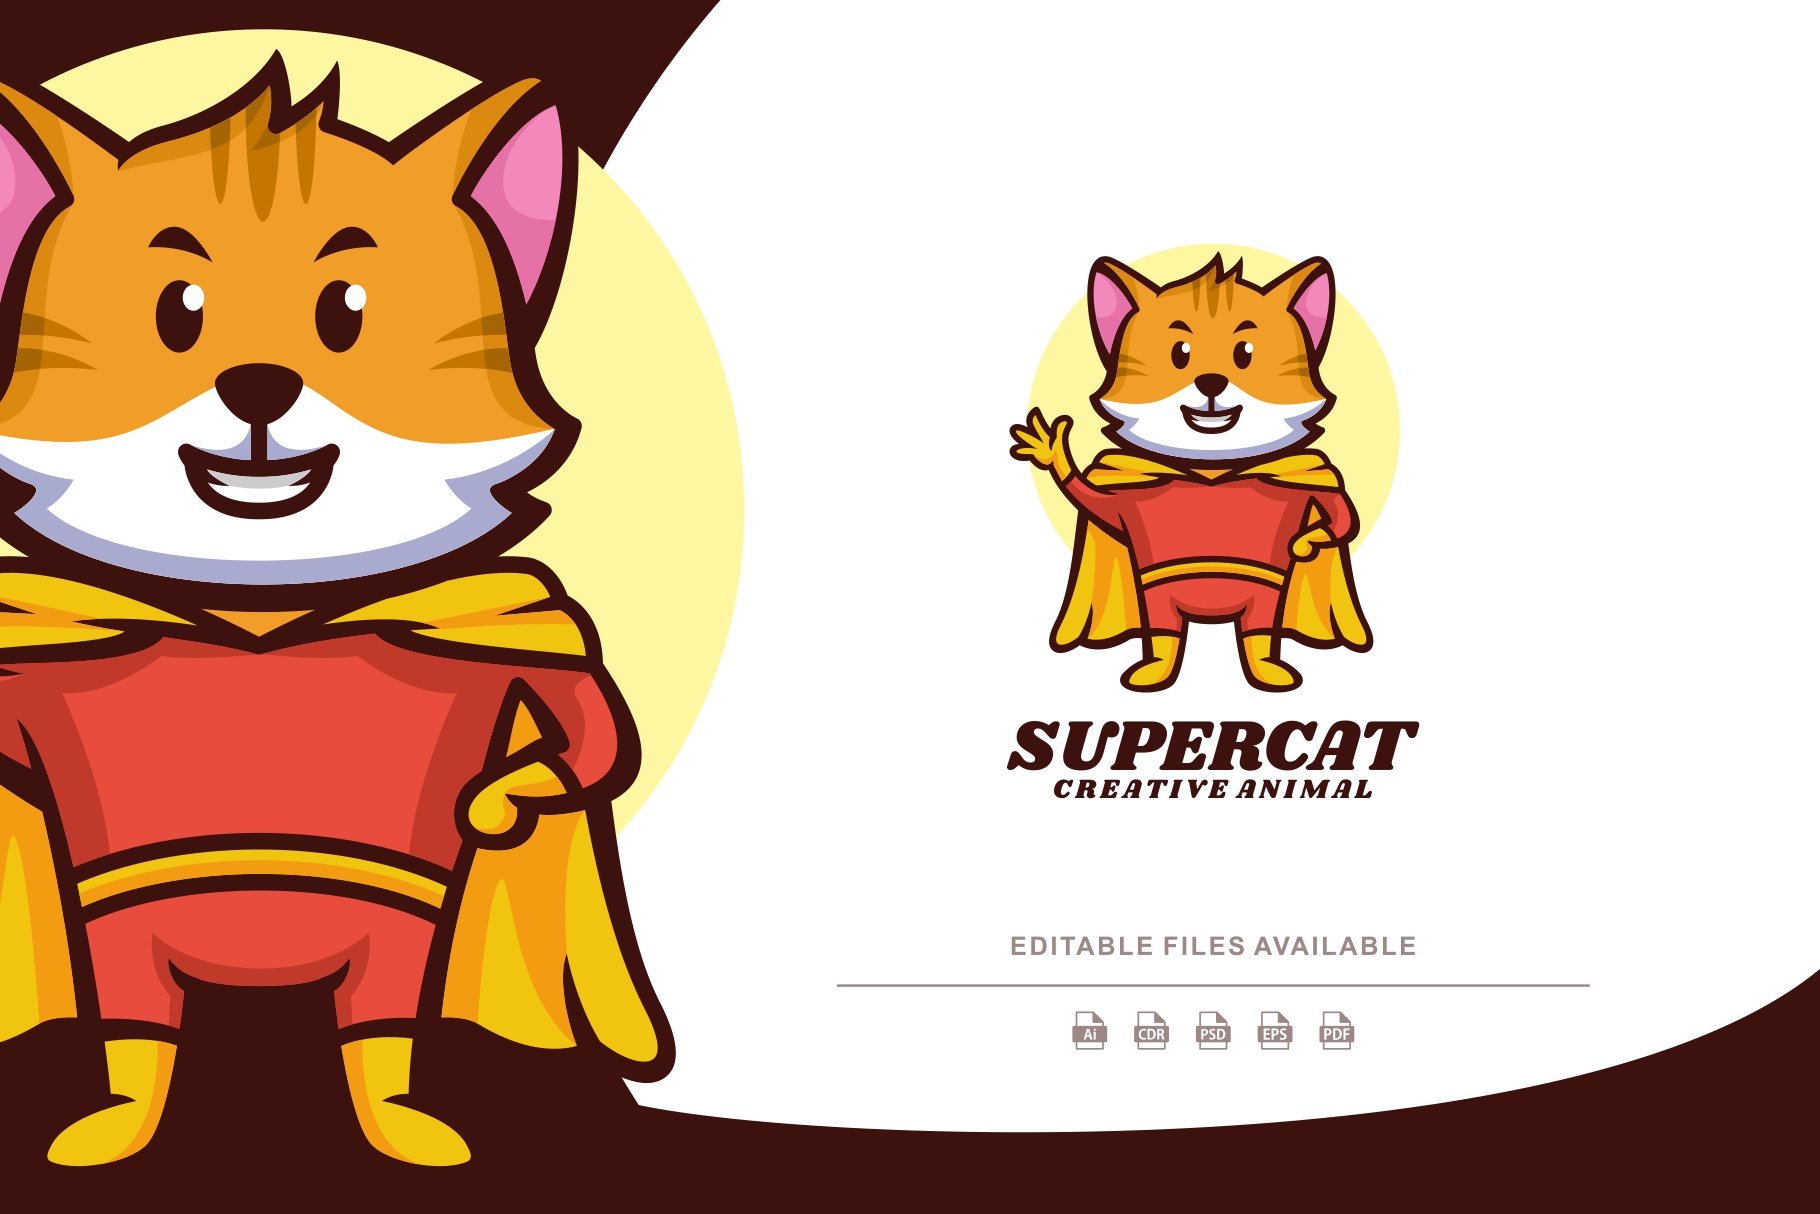 Super Cat Cartoon Mascot Logo cover image.